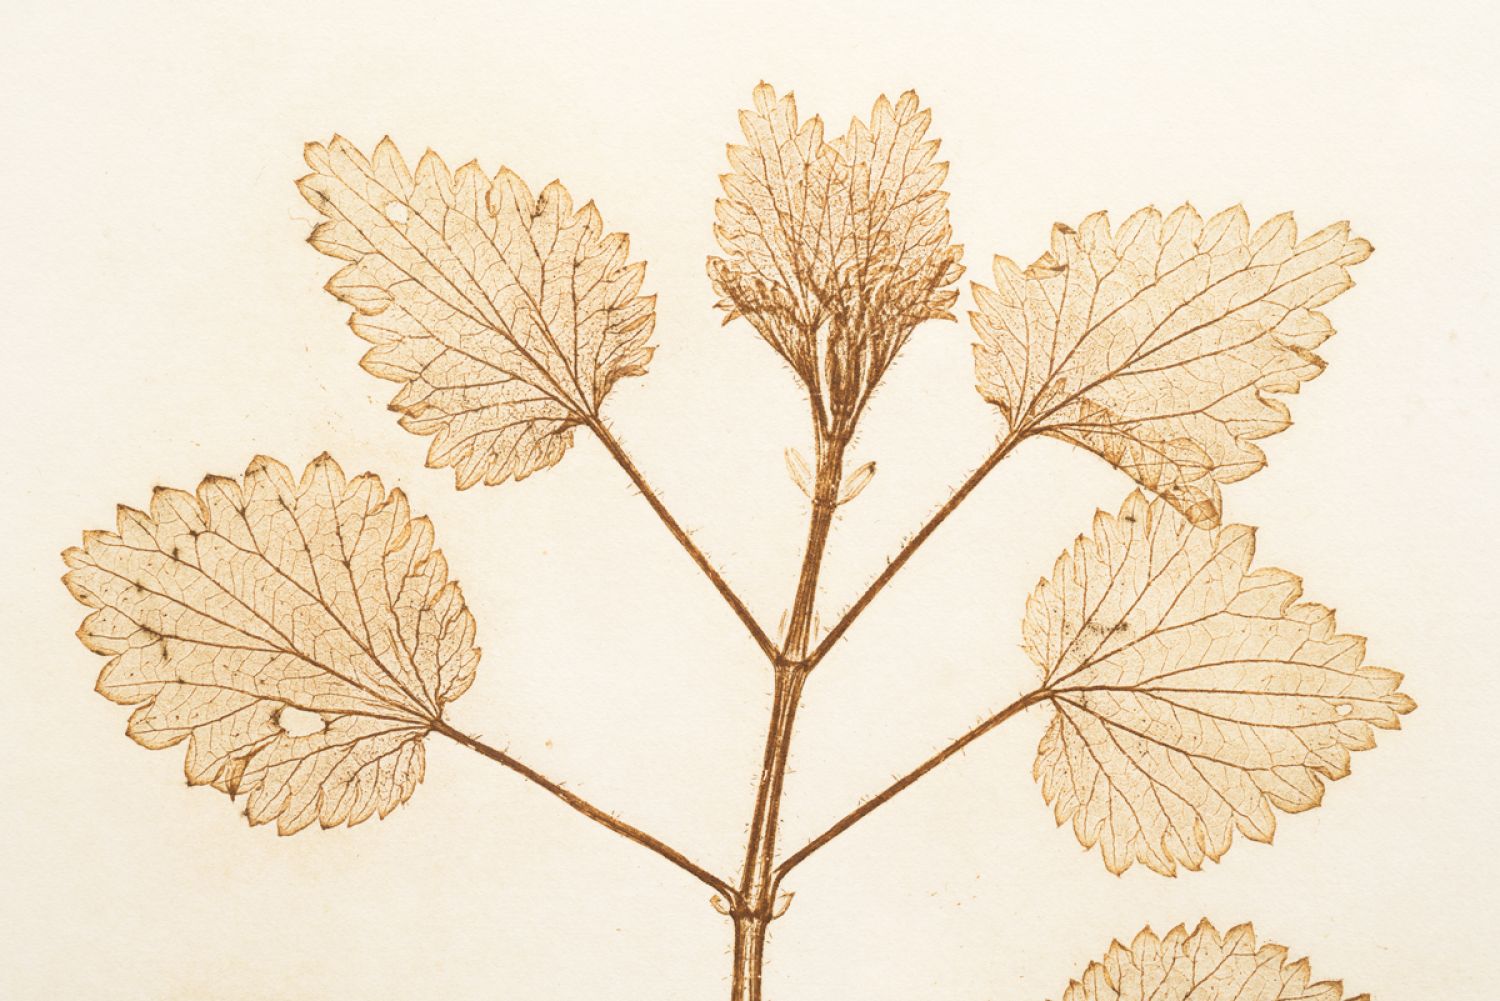 Família Urtiga («Urticaceae»), «Urtica dioica» (urtiga), 2017. Impressão natural, 60 x 43,5 cm (detalhe)